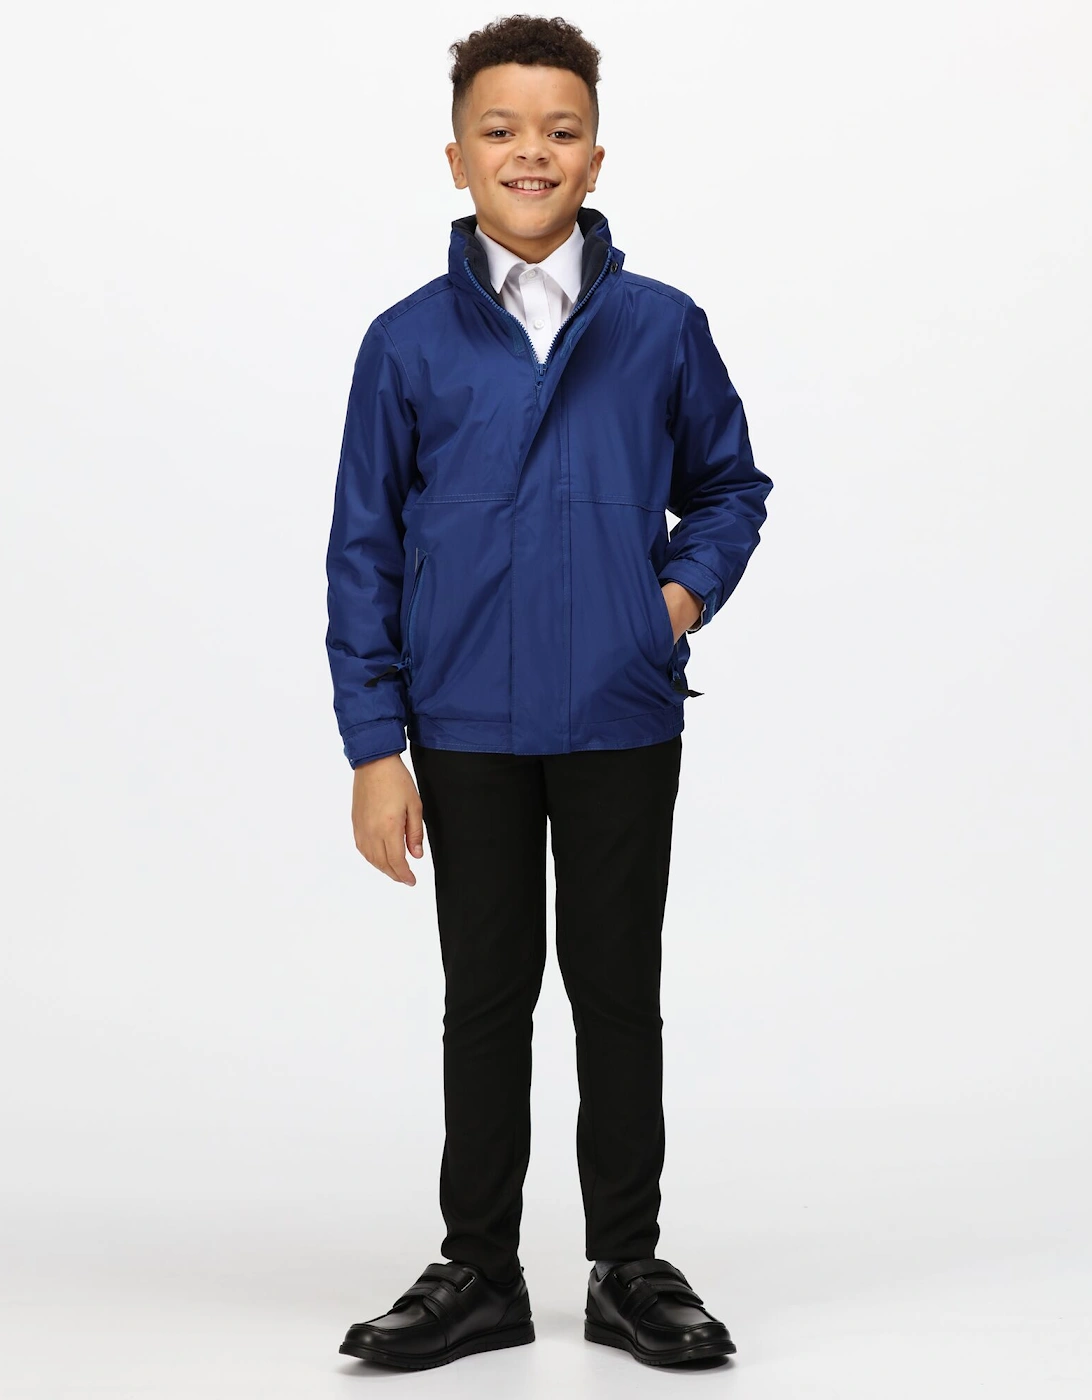 Kids/Childrens Waterproof Windproof Dover Jacket